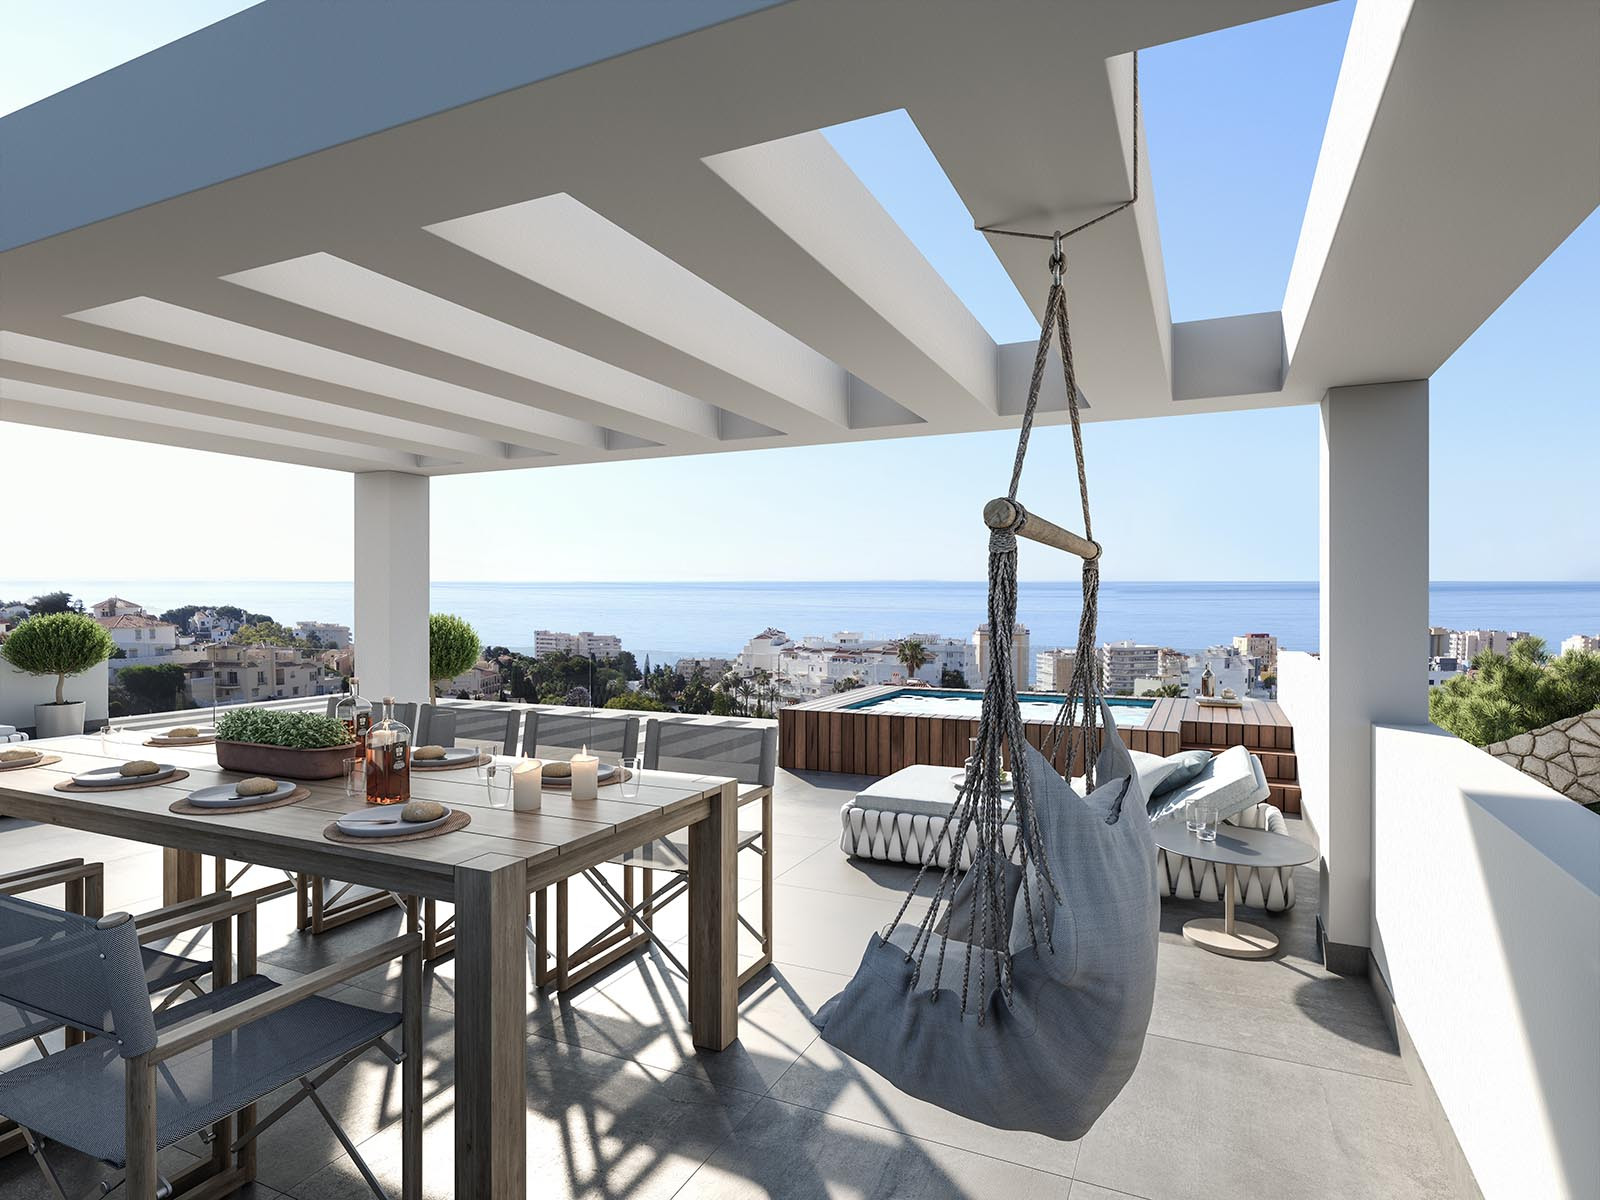 Contemporary Costa del sol villa, luxury costa del sol villa with sea views a...